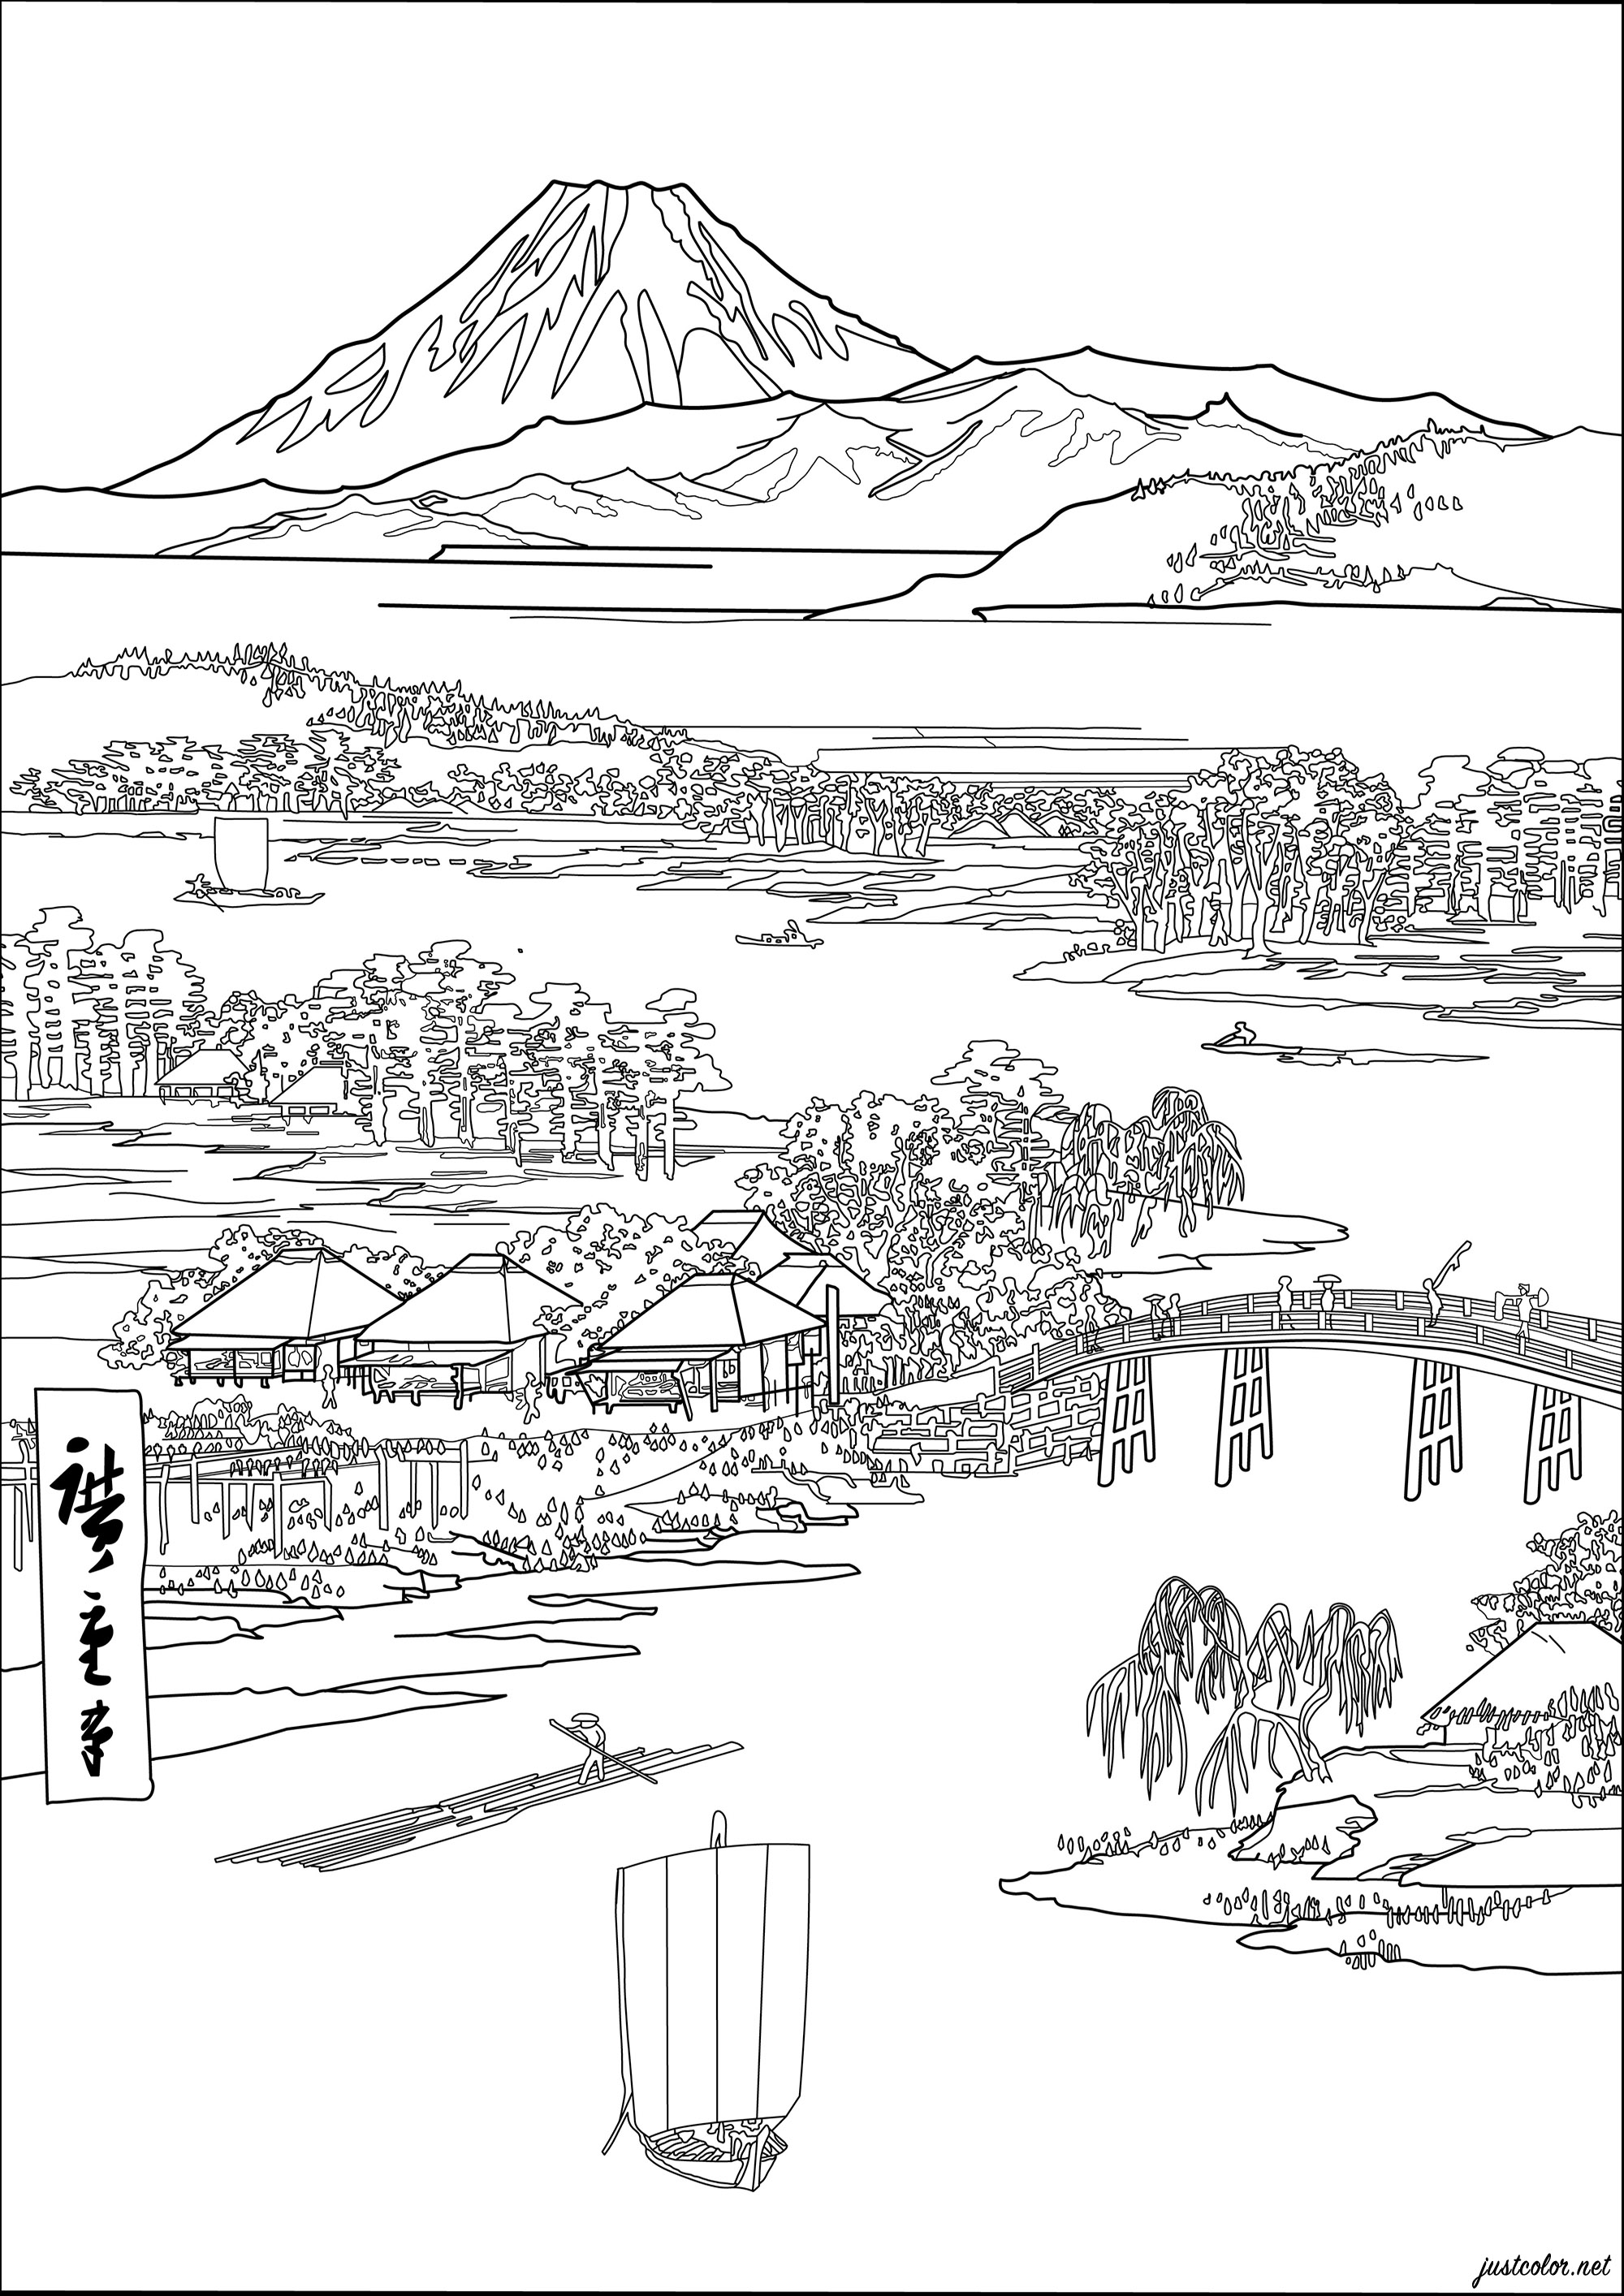 Coloreado basado en un grabado japonés de Utagawa Hiroshige (1833). Esta japonesa representa una escena japonesa clásica, con casas de estilo tradicional y montañas al fondo.Los colores originales son suaves y pastel, con tonos azules, verdes y rosas, Artista : Morgan